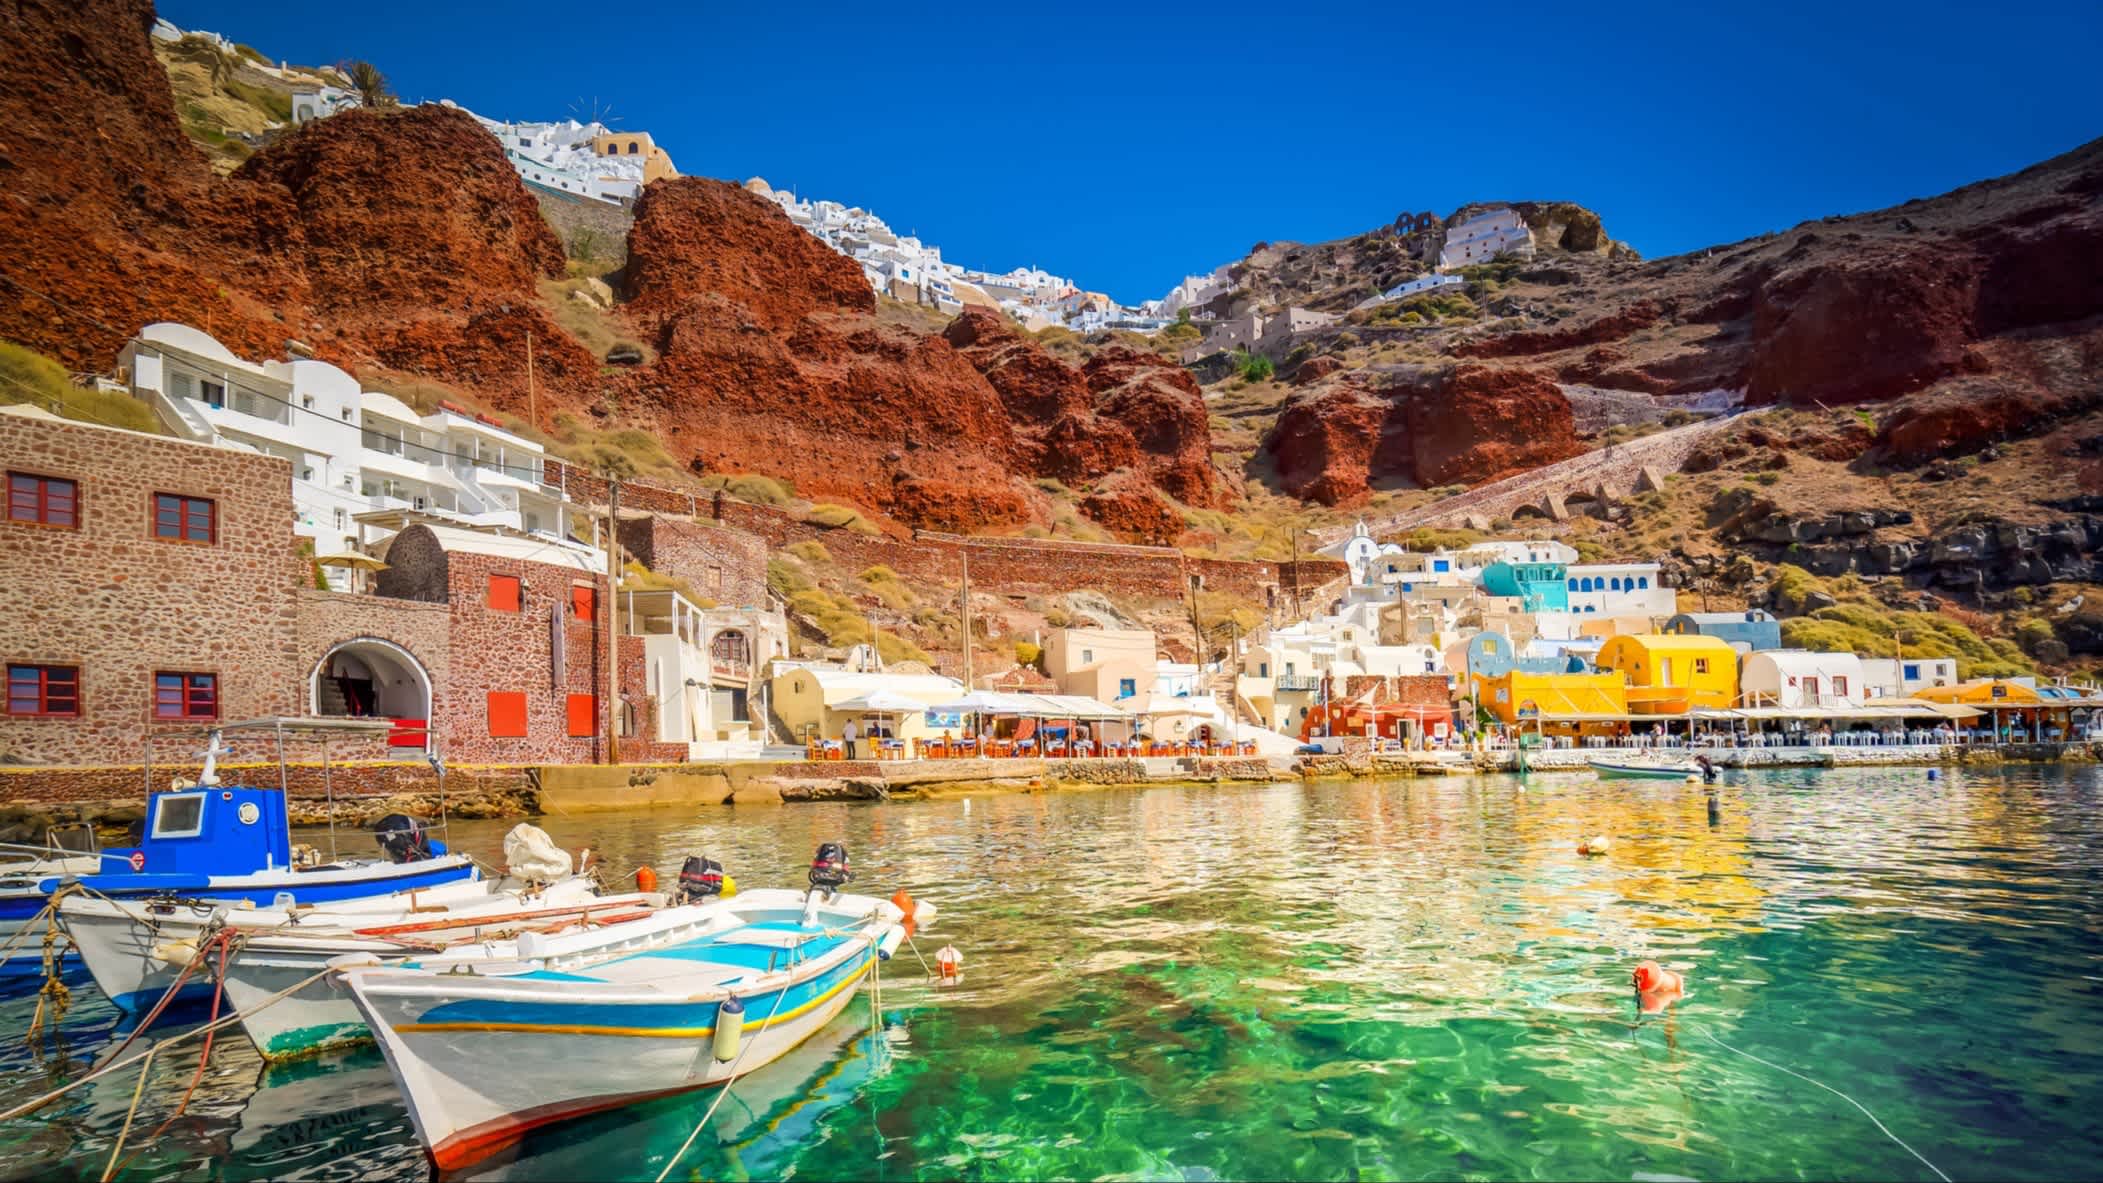 Blick zur farbenfrohen Amoudi-Bucht, Santorin, Griechenland mit kristallklarem Wasser sowie Booten im Wasser und Häusern am Rand sowie roten Felsen.